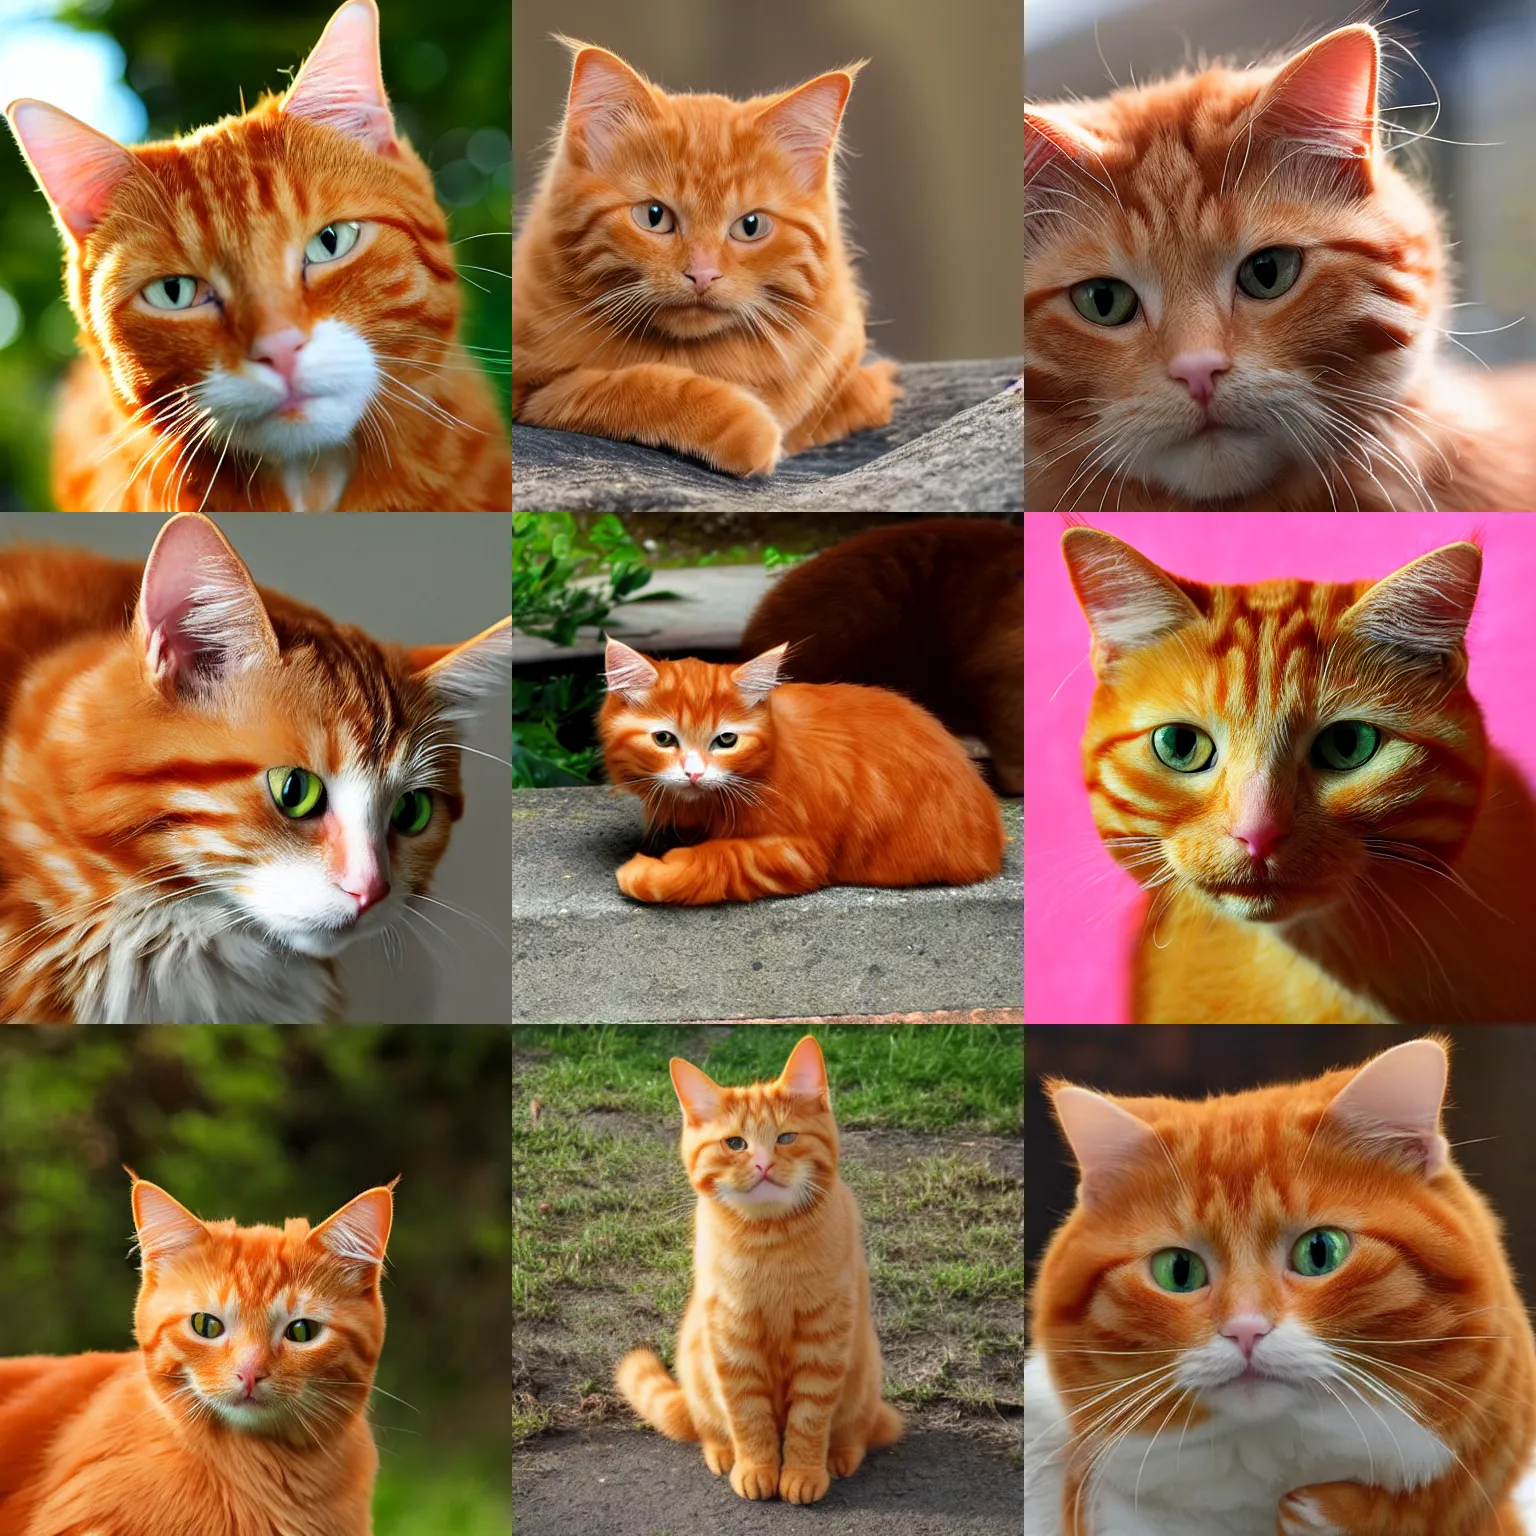 Prompt: ginger cat